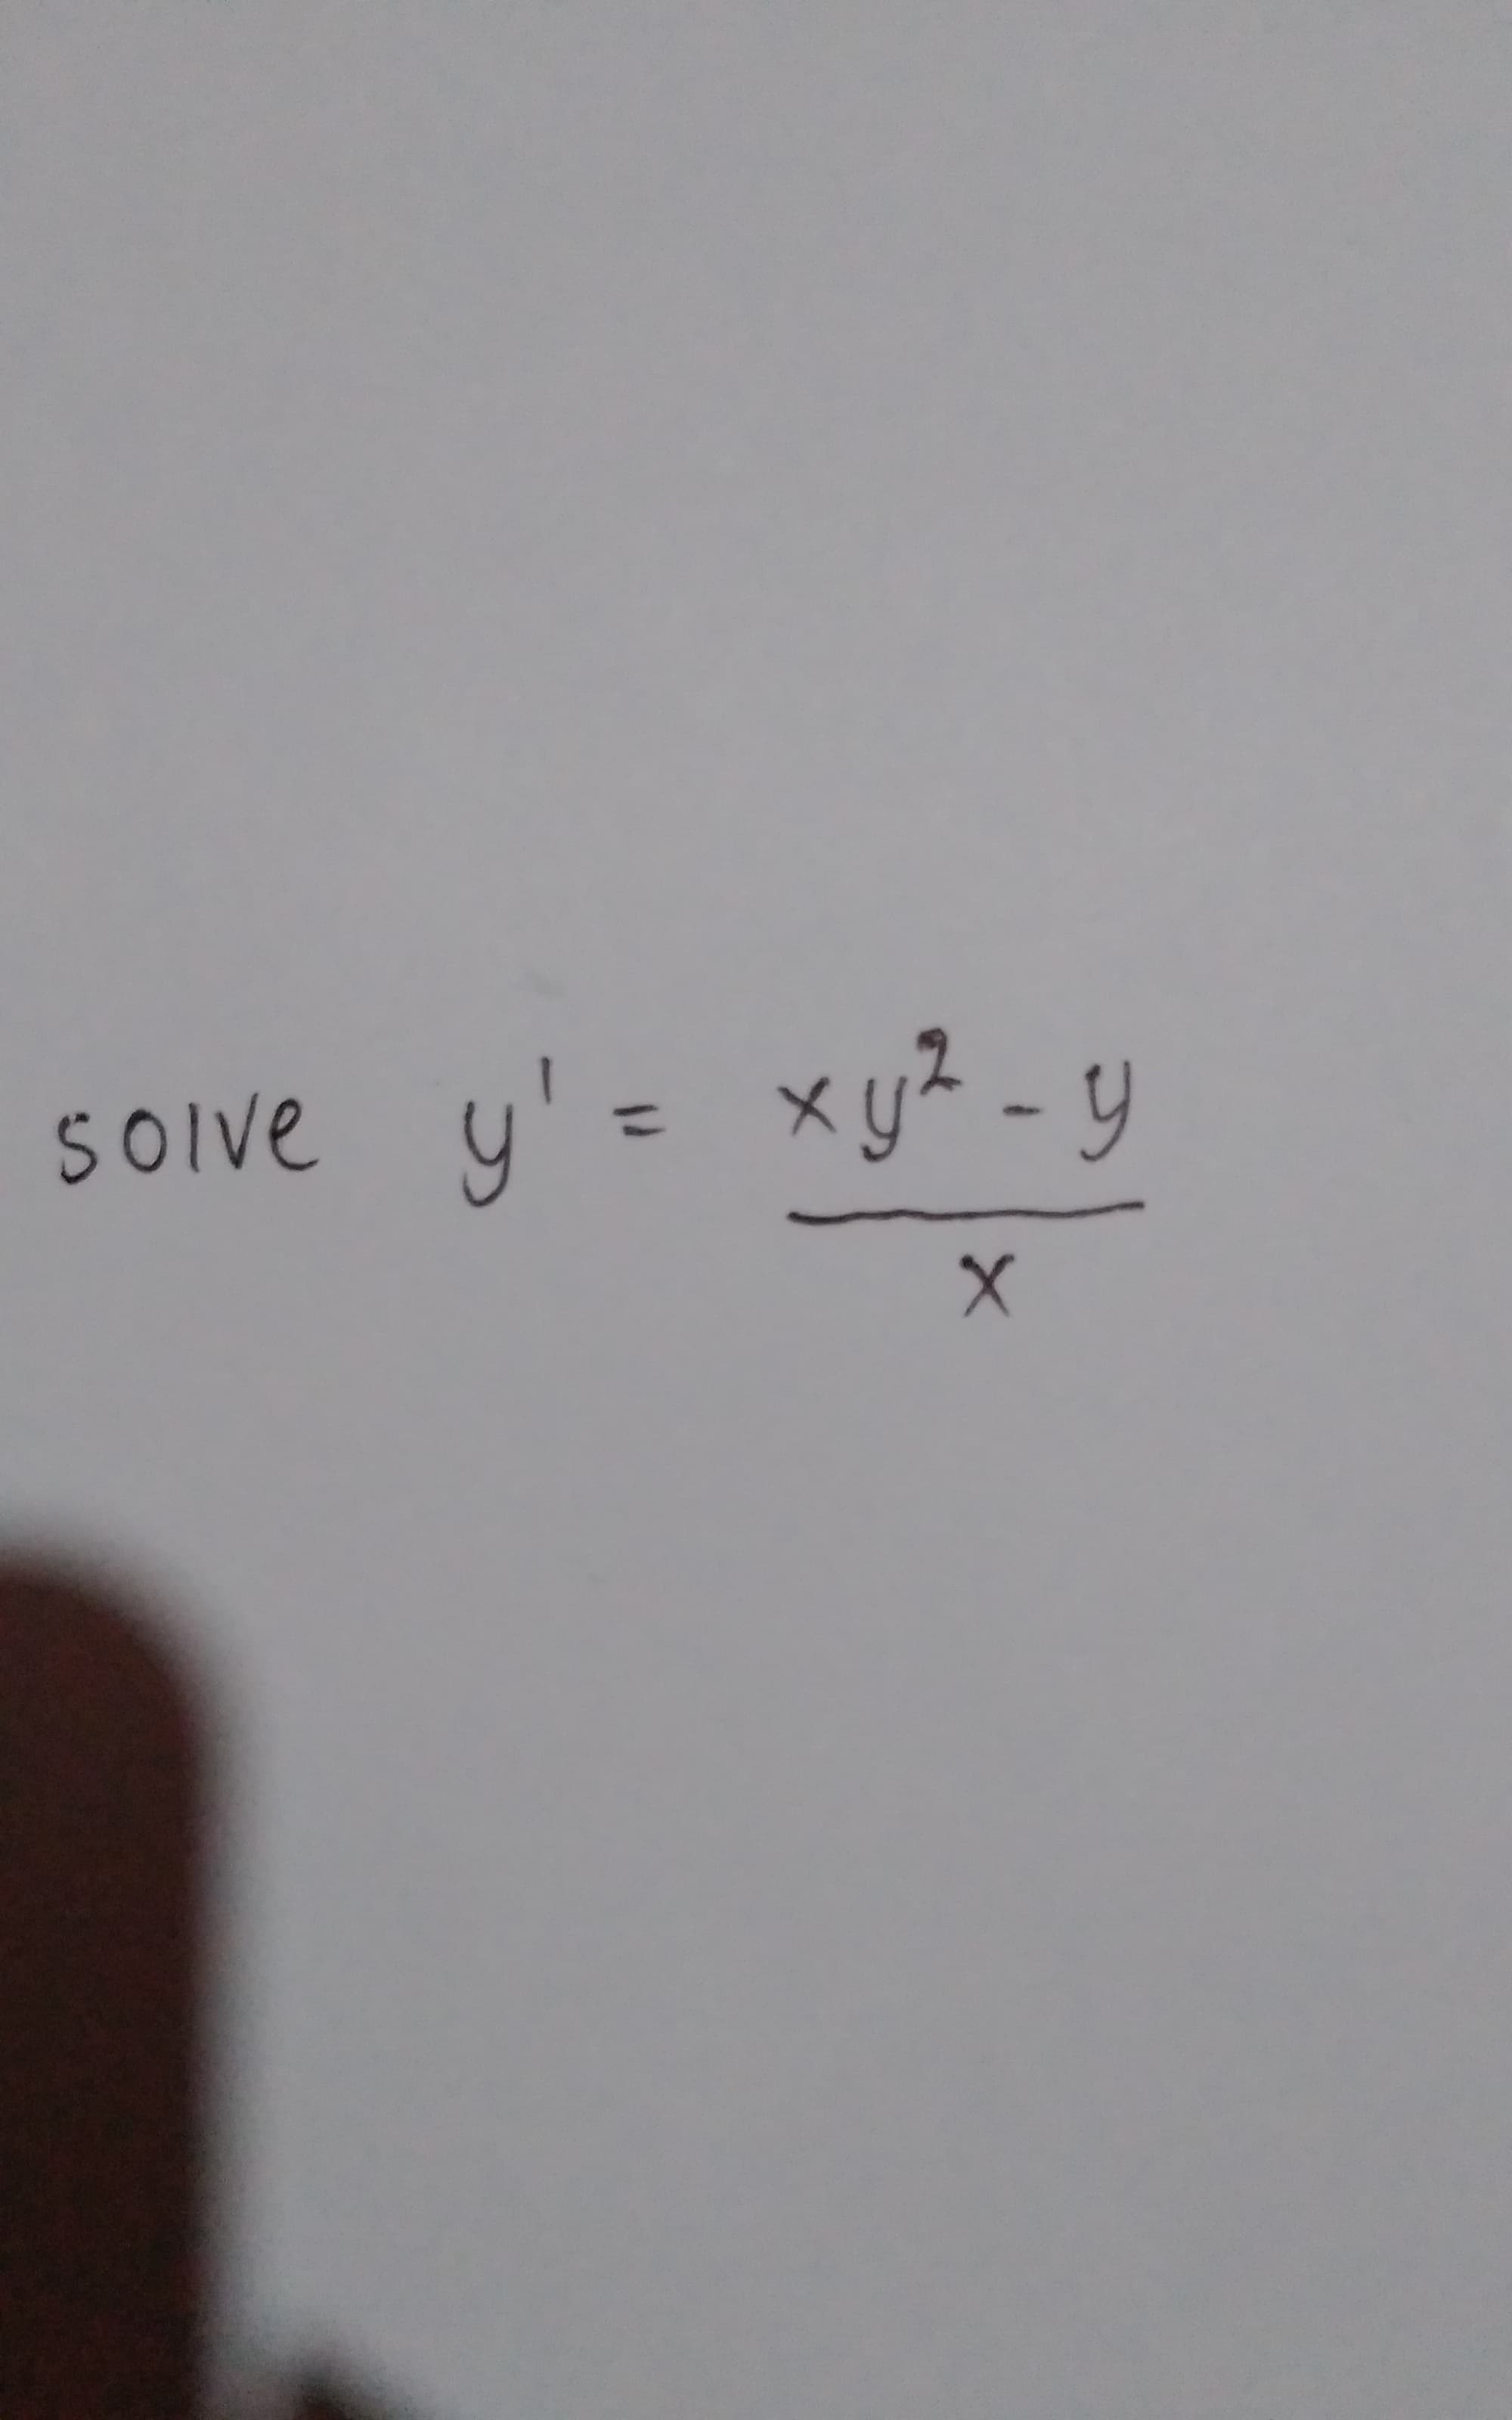 SOive y
'= xy² - y
SOlve
%3D
